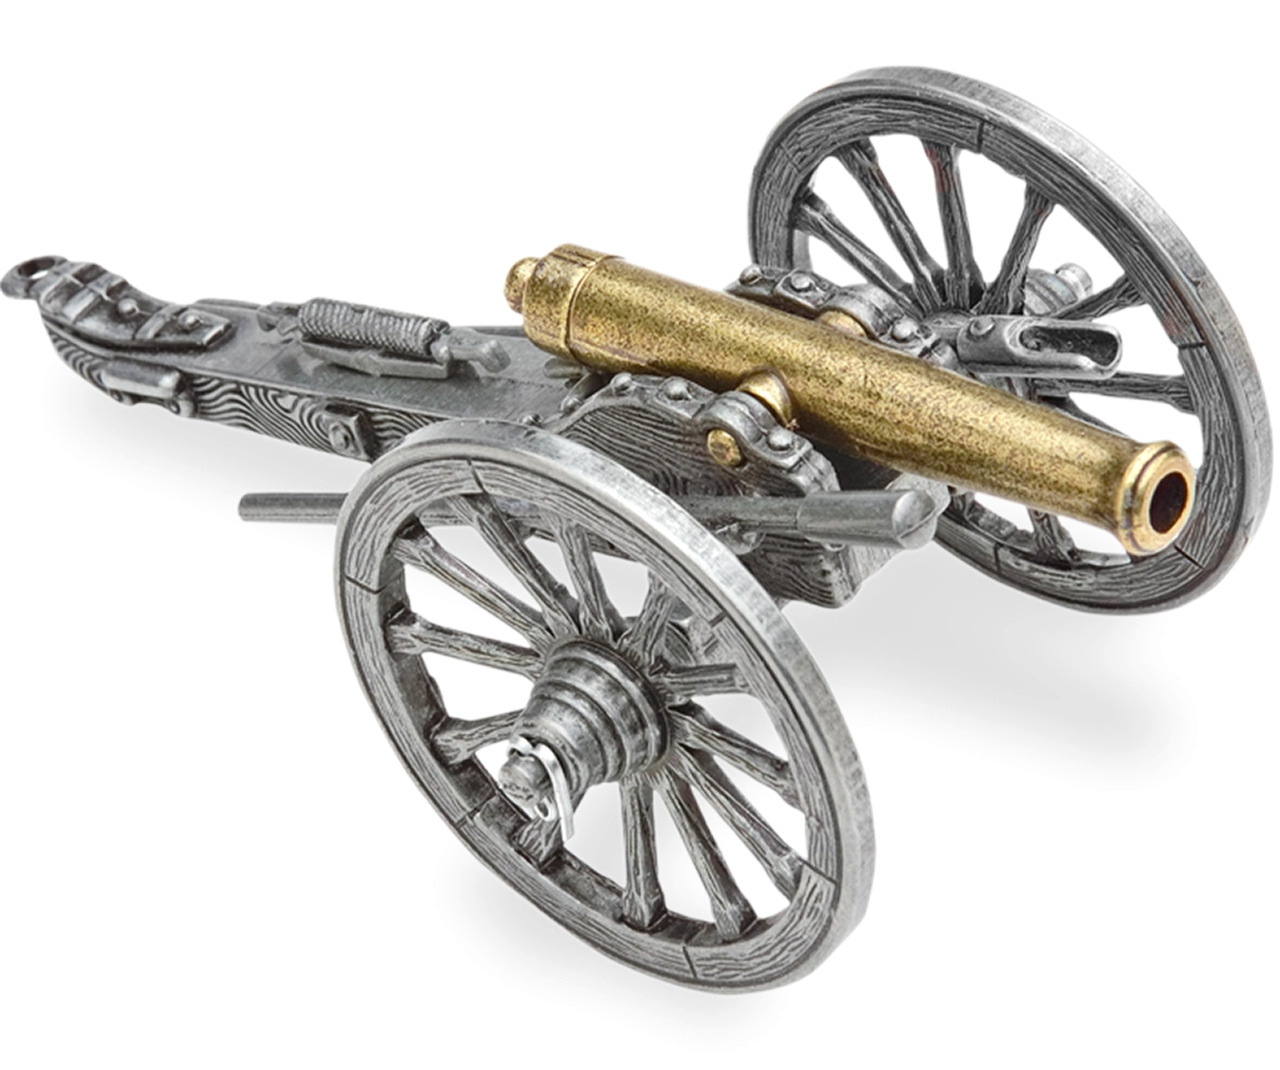 Civil War Miniature Napoleonic Cannon - Confederate - Union - Denix Replica